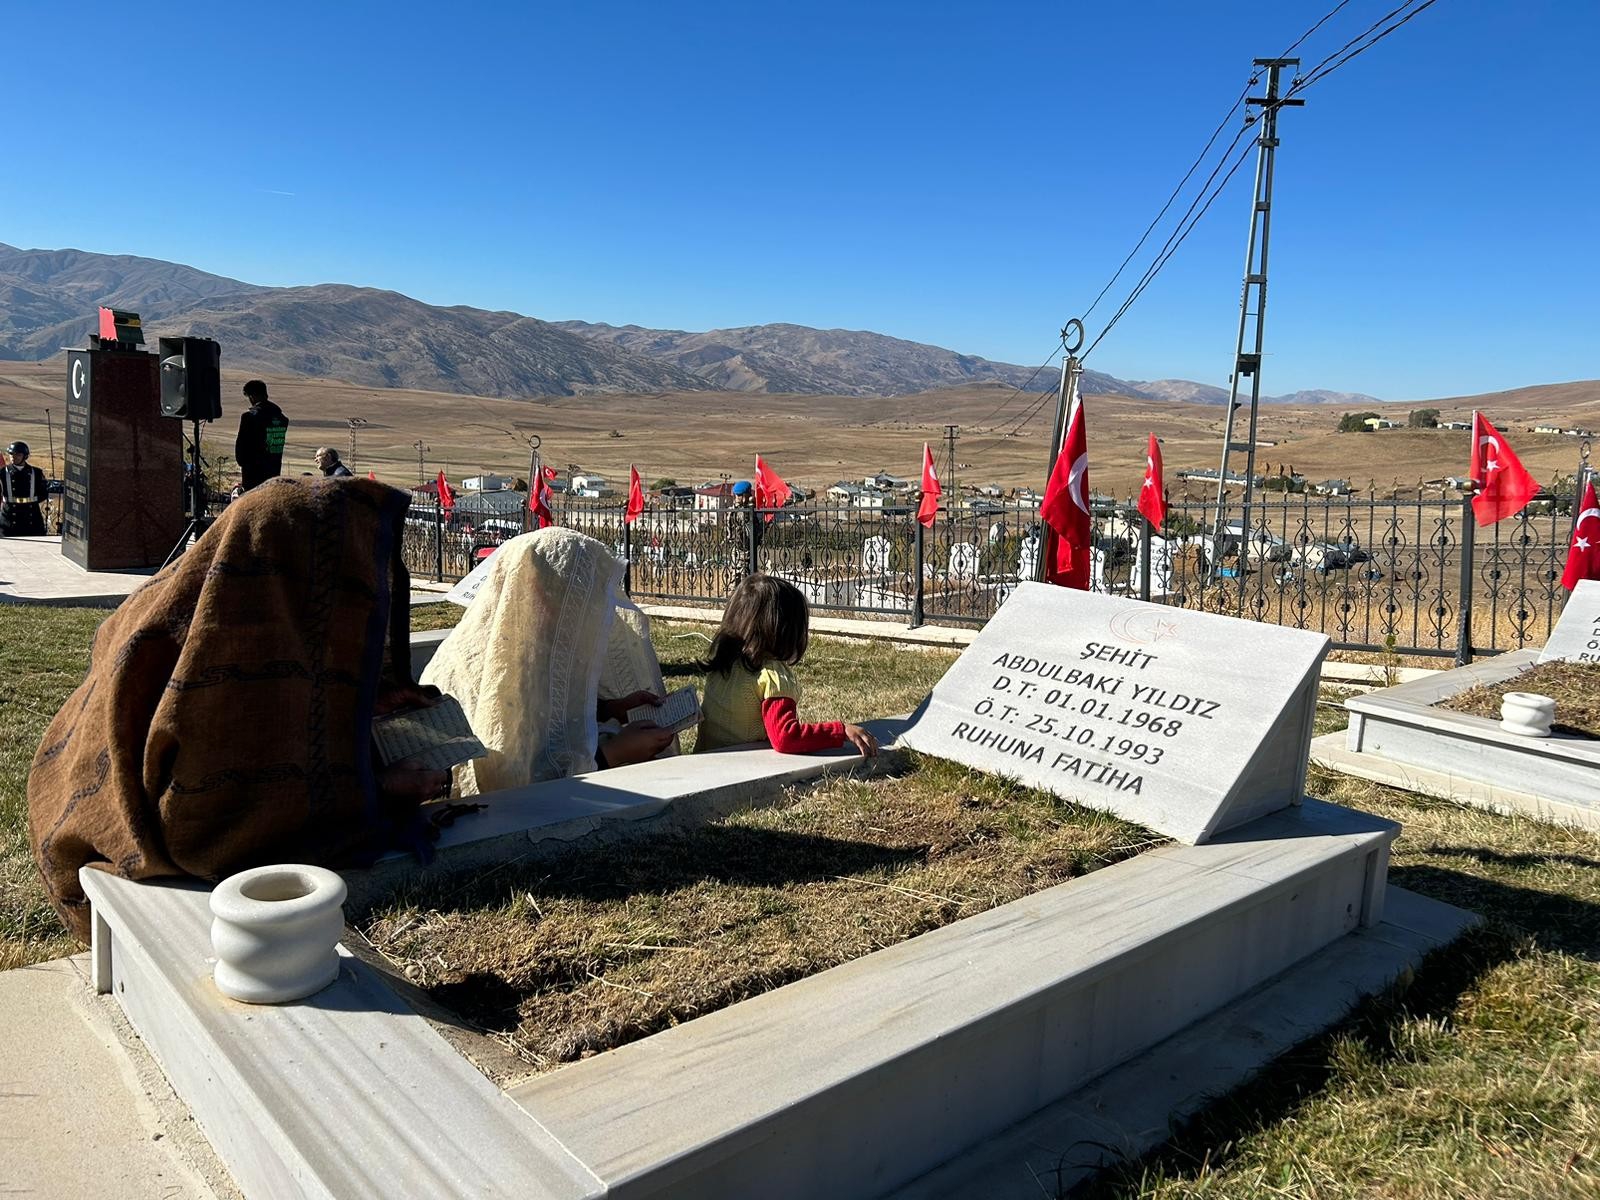 Yavi'de PKK'lı teröristlerin 29 yıl önce şehit ettiği 33 kişi anıldı